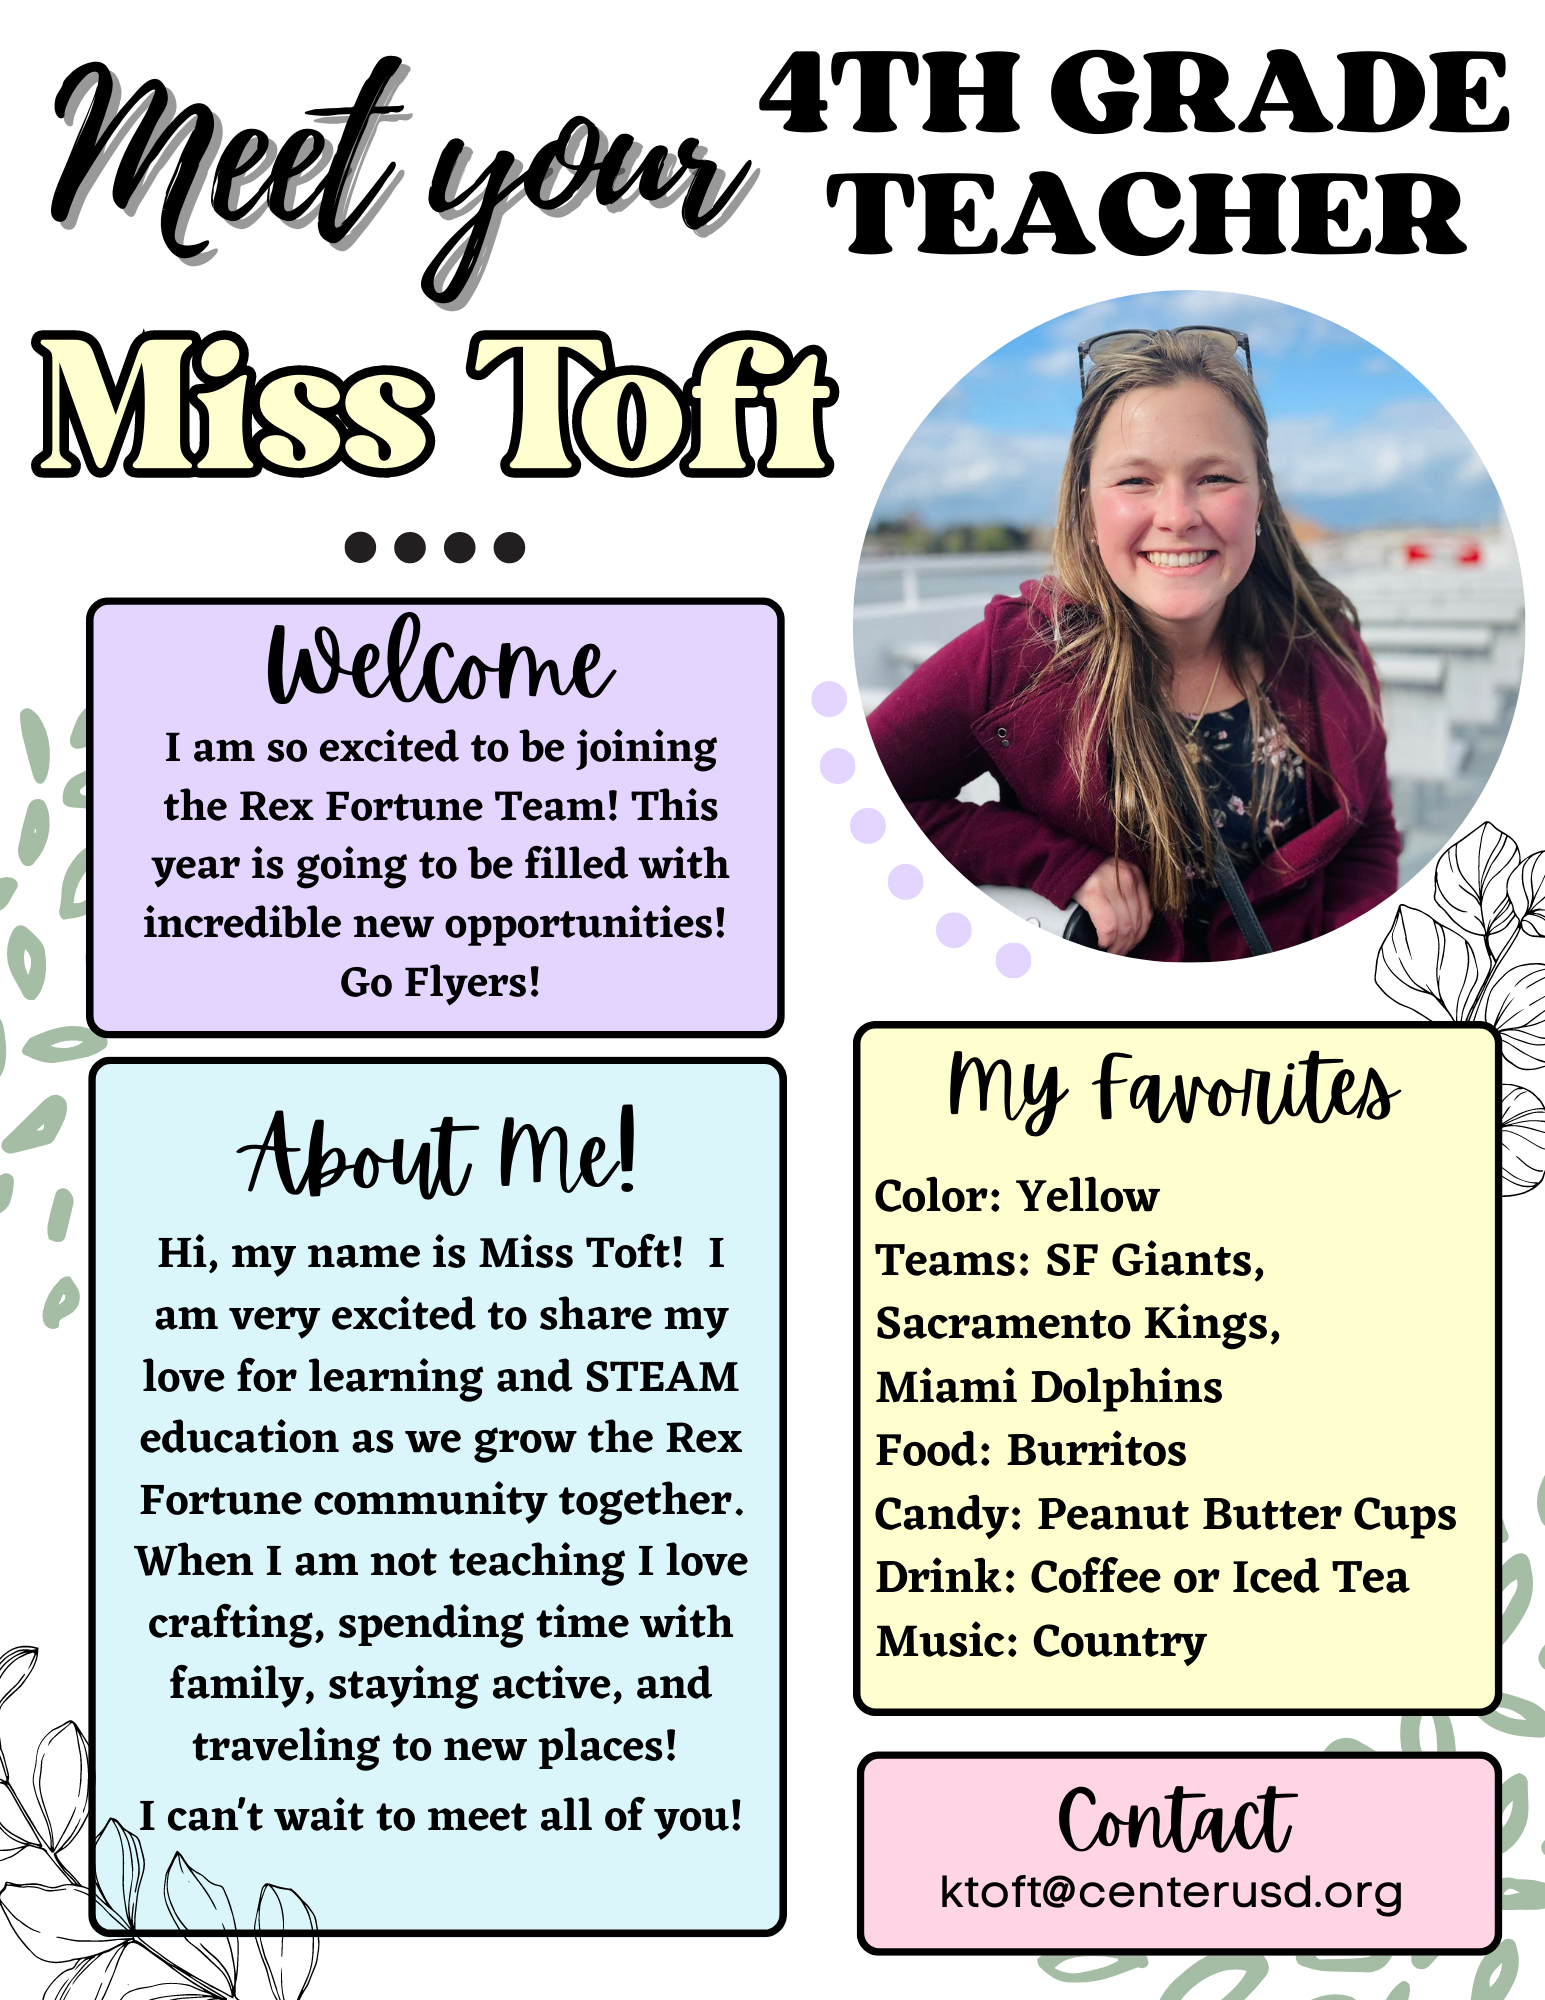 Meet Miss Toft, 4th grade teacher